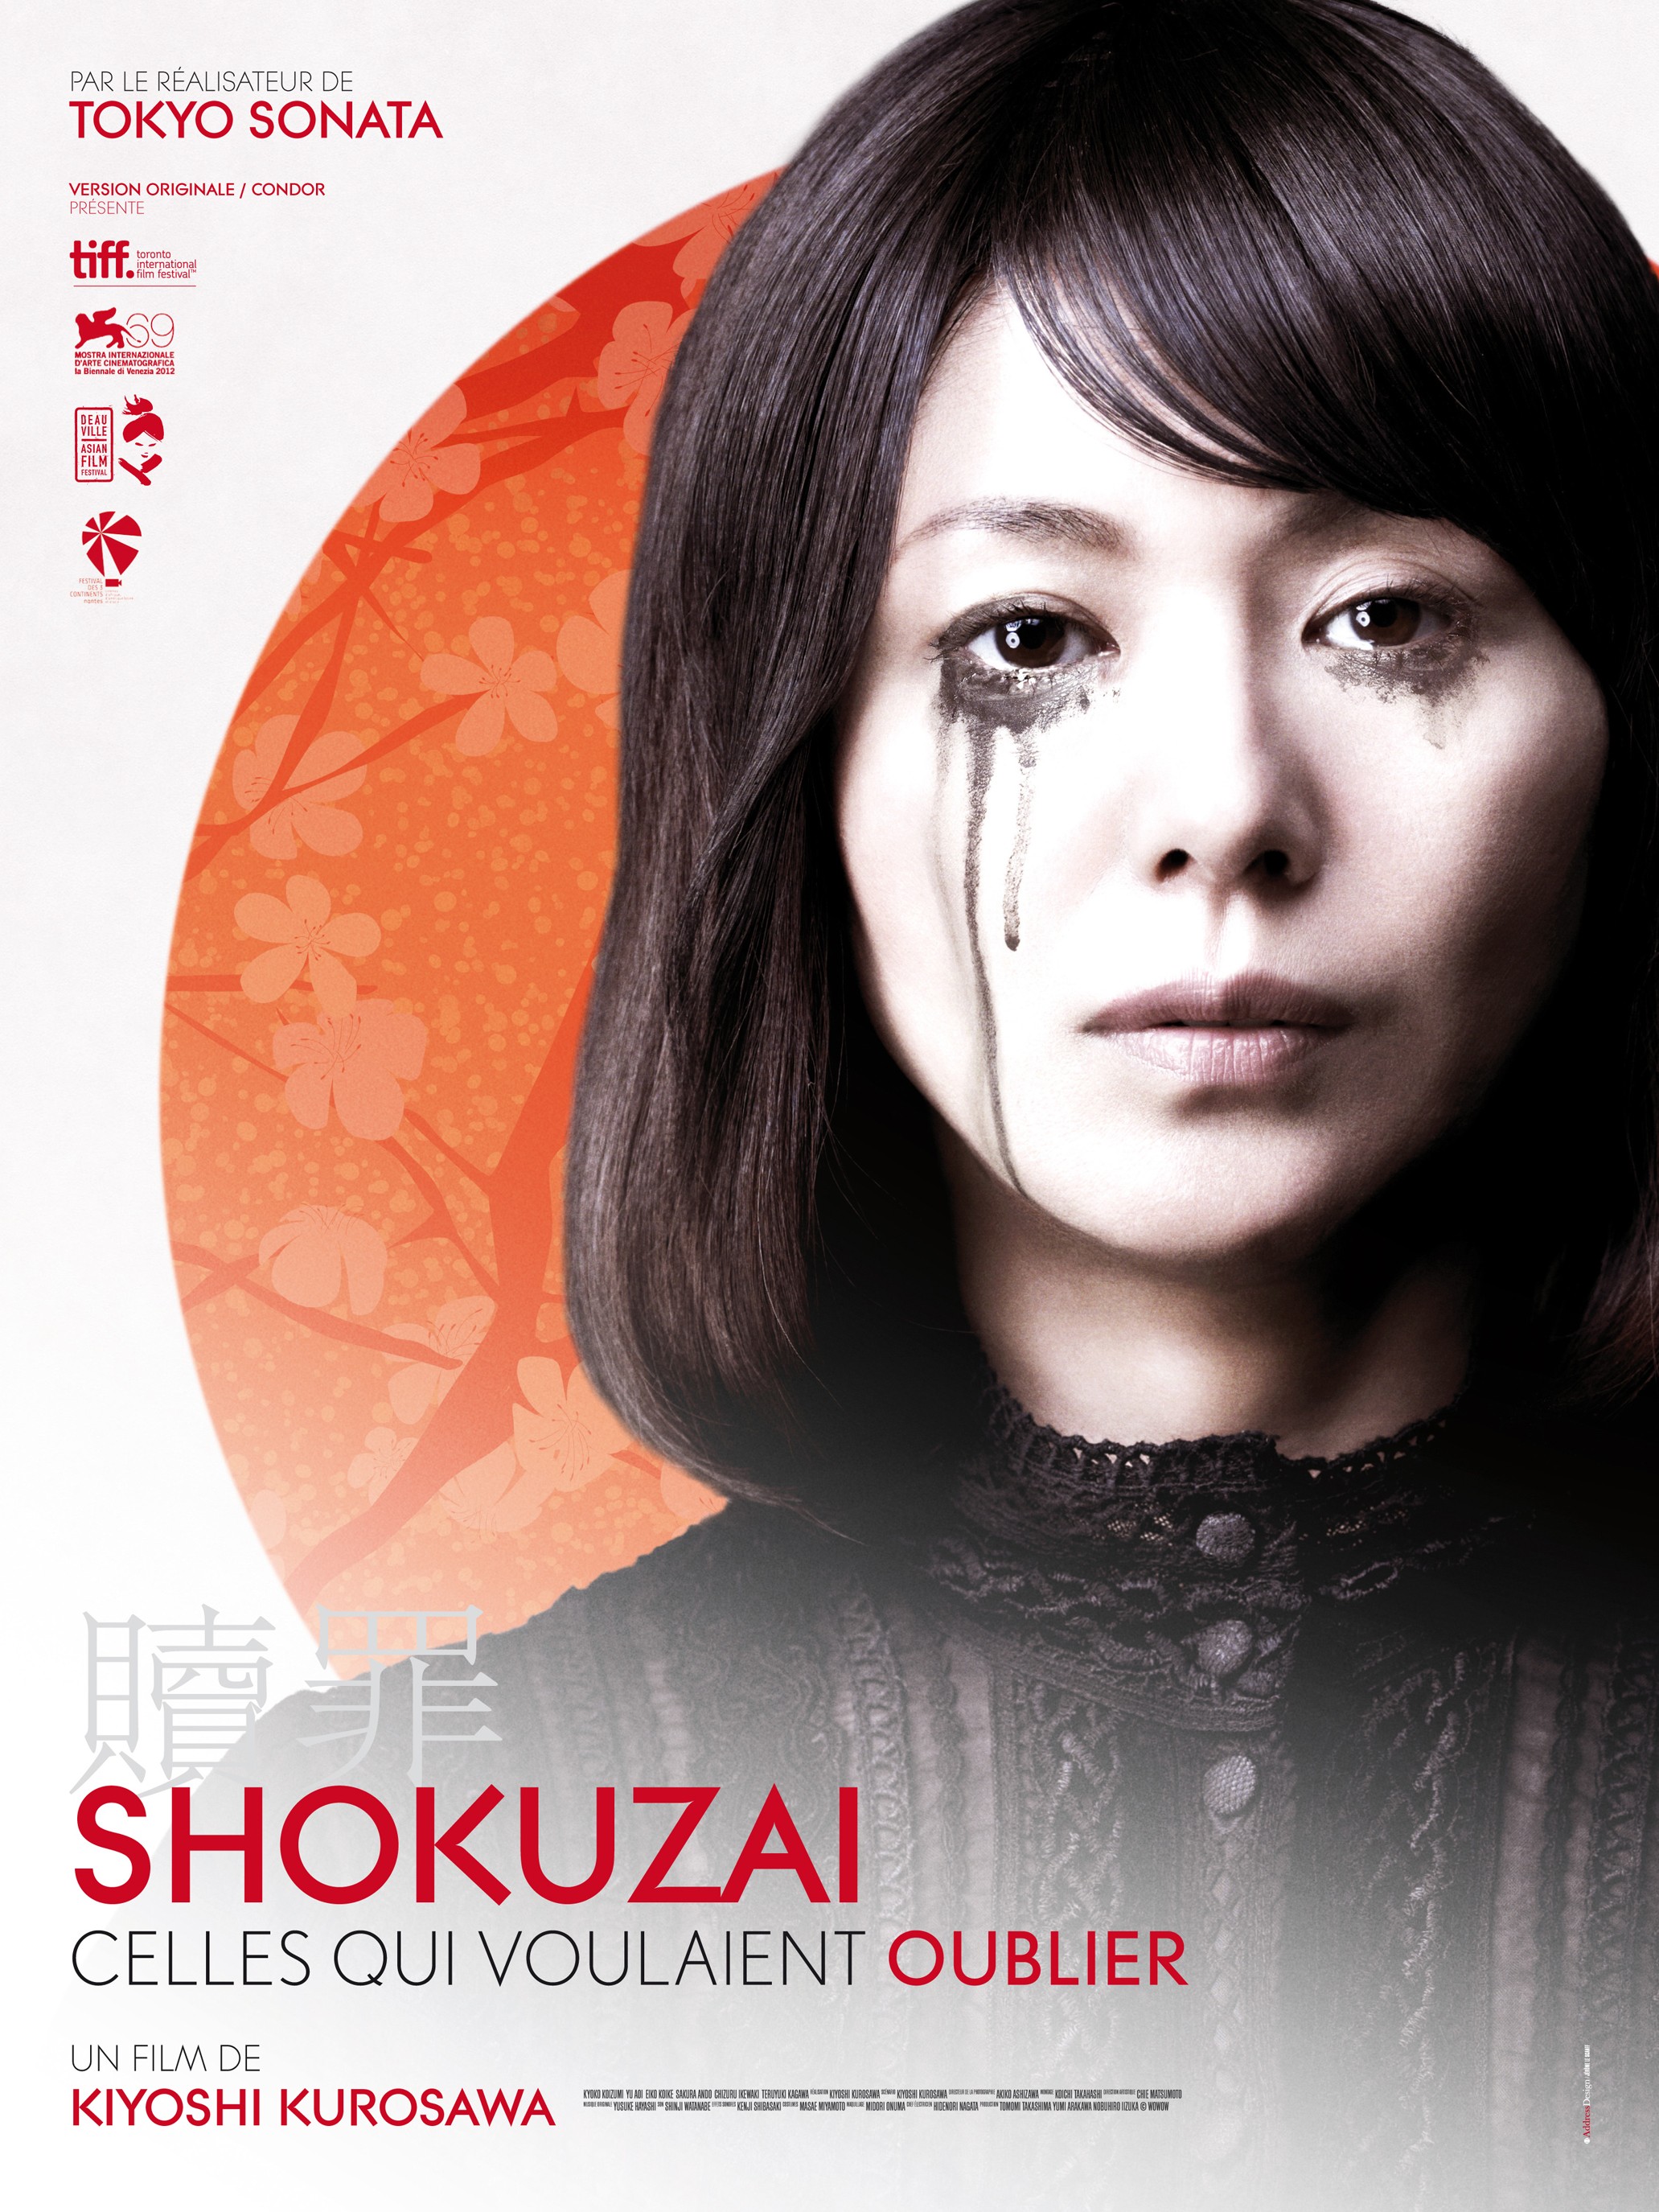 Mega Sized Movie Poster Image for Shokuzai - Celles qui voulaient oublier (#2 of 2)